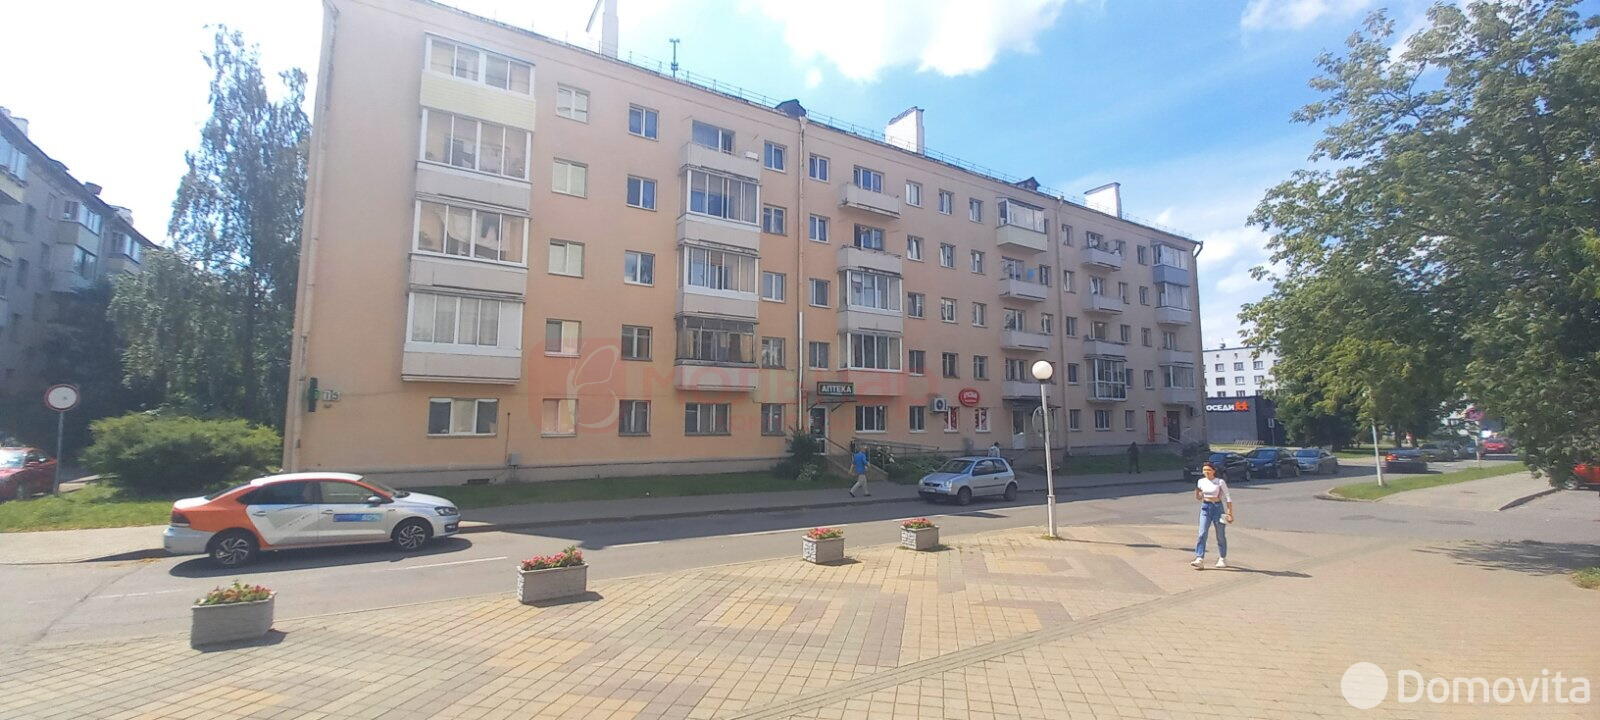 Купить торговое помещение на ул. Белинского, д. 15 в Минске - фото 3